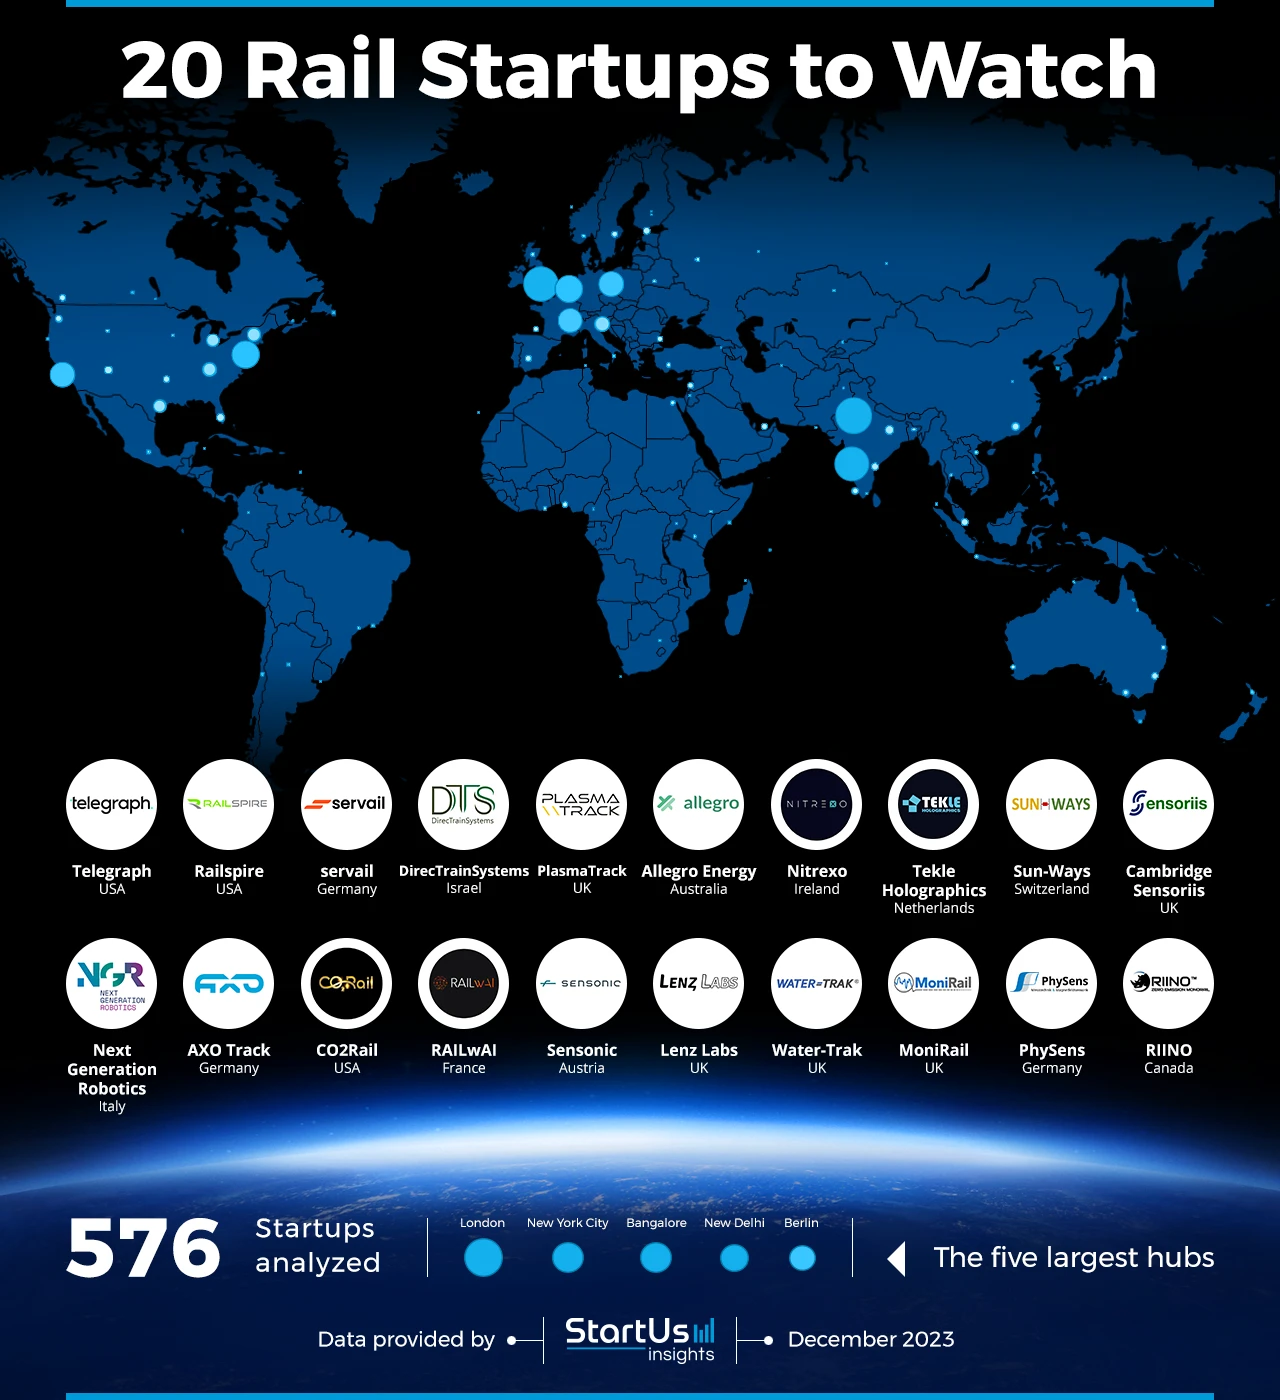 Rail-Startups-to-Watch-Heat-Map-StartUs-Insights-noresize